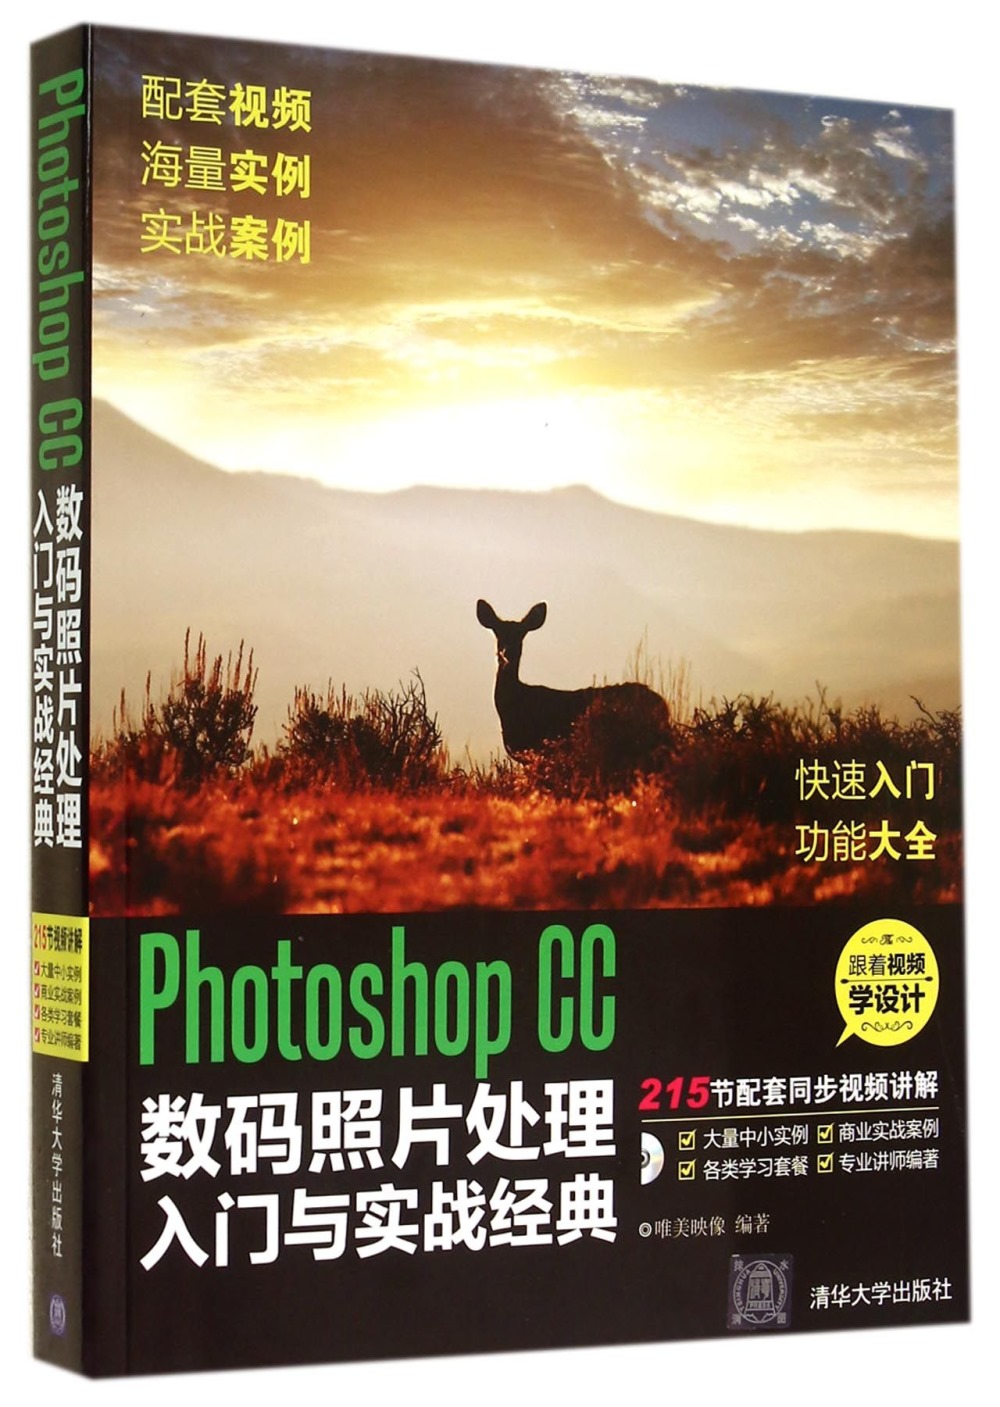 Photoshop CC數碼照片處理入門與實戰經典